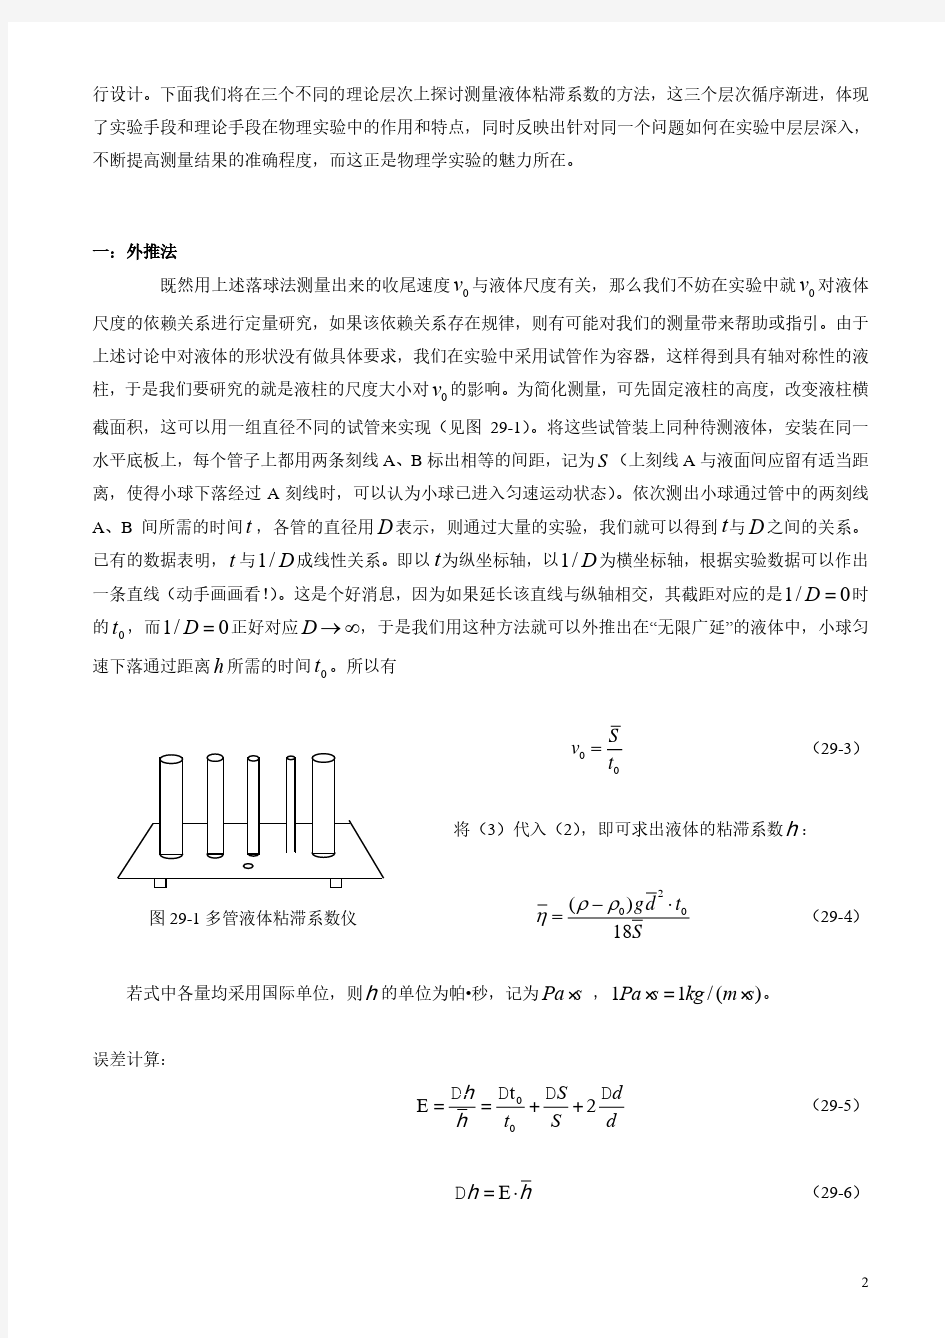 广东工业大学物理实验——液体粘滞系数测定